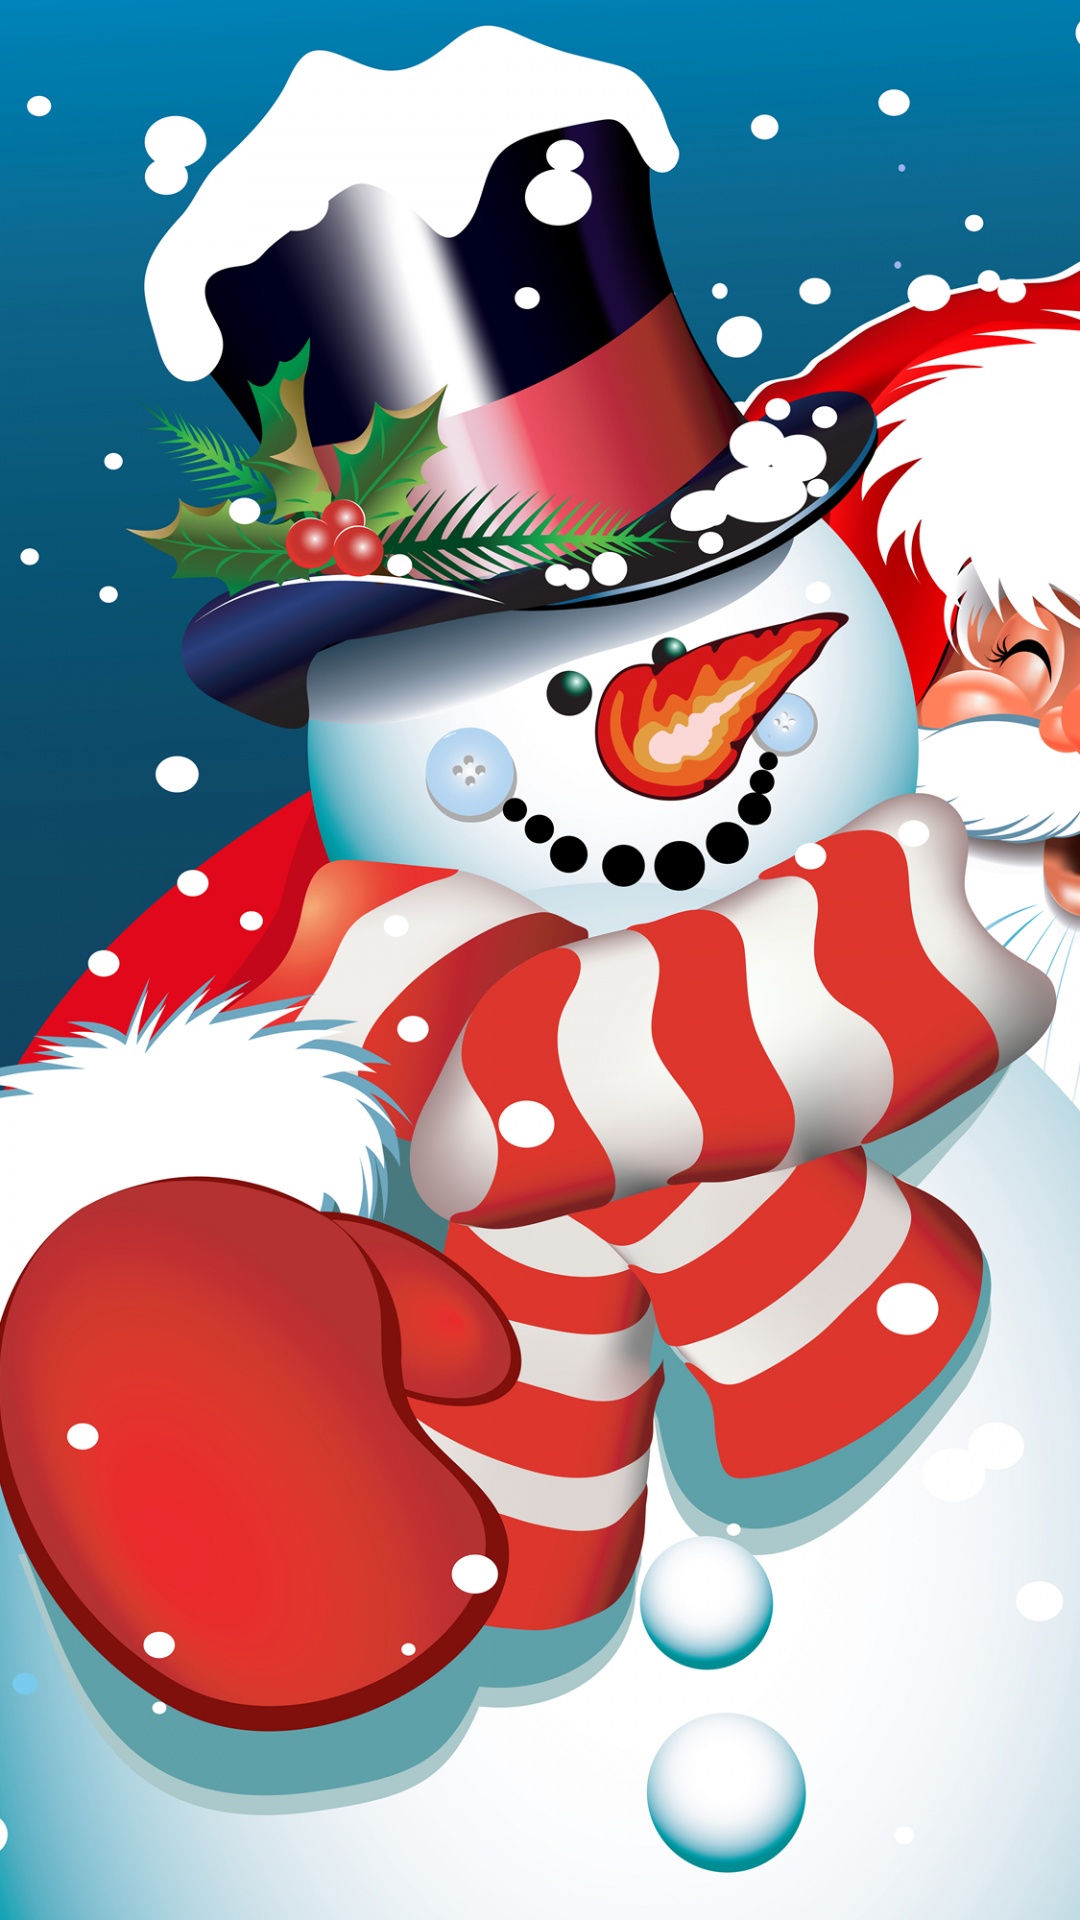 圣诞老人, 圣诞节那天, 雪人, 圣诞节, 卡通 壁纸 1080x1920 允许